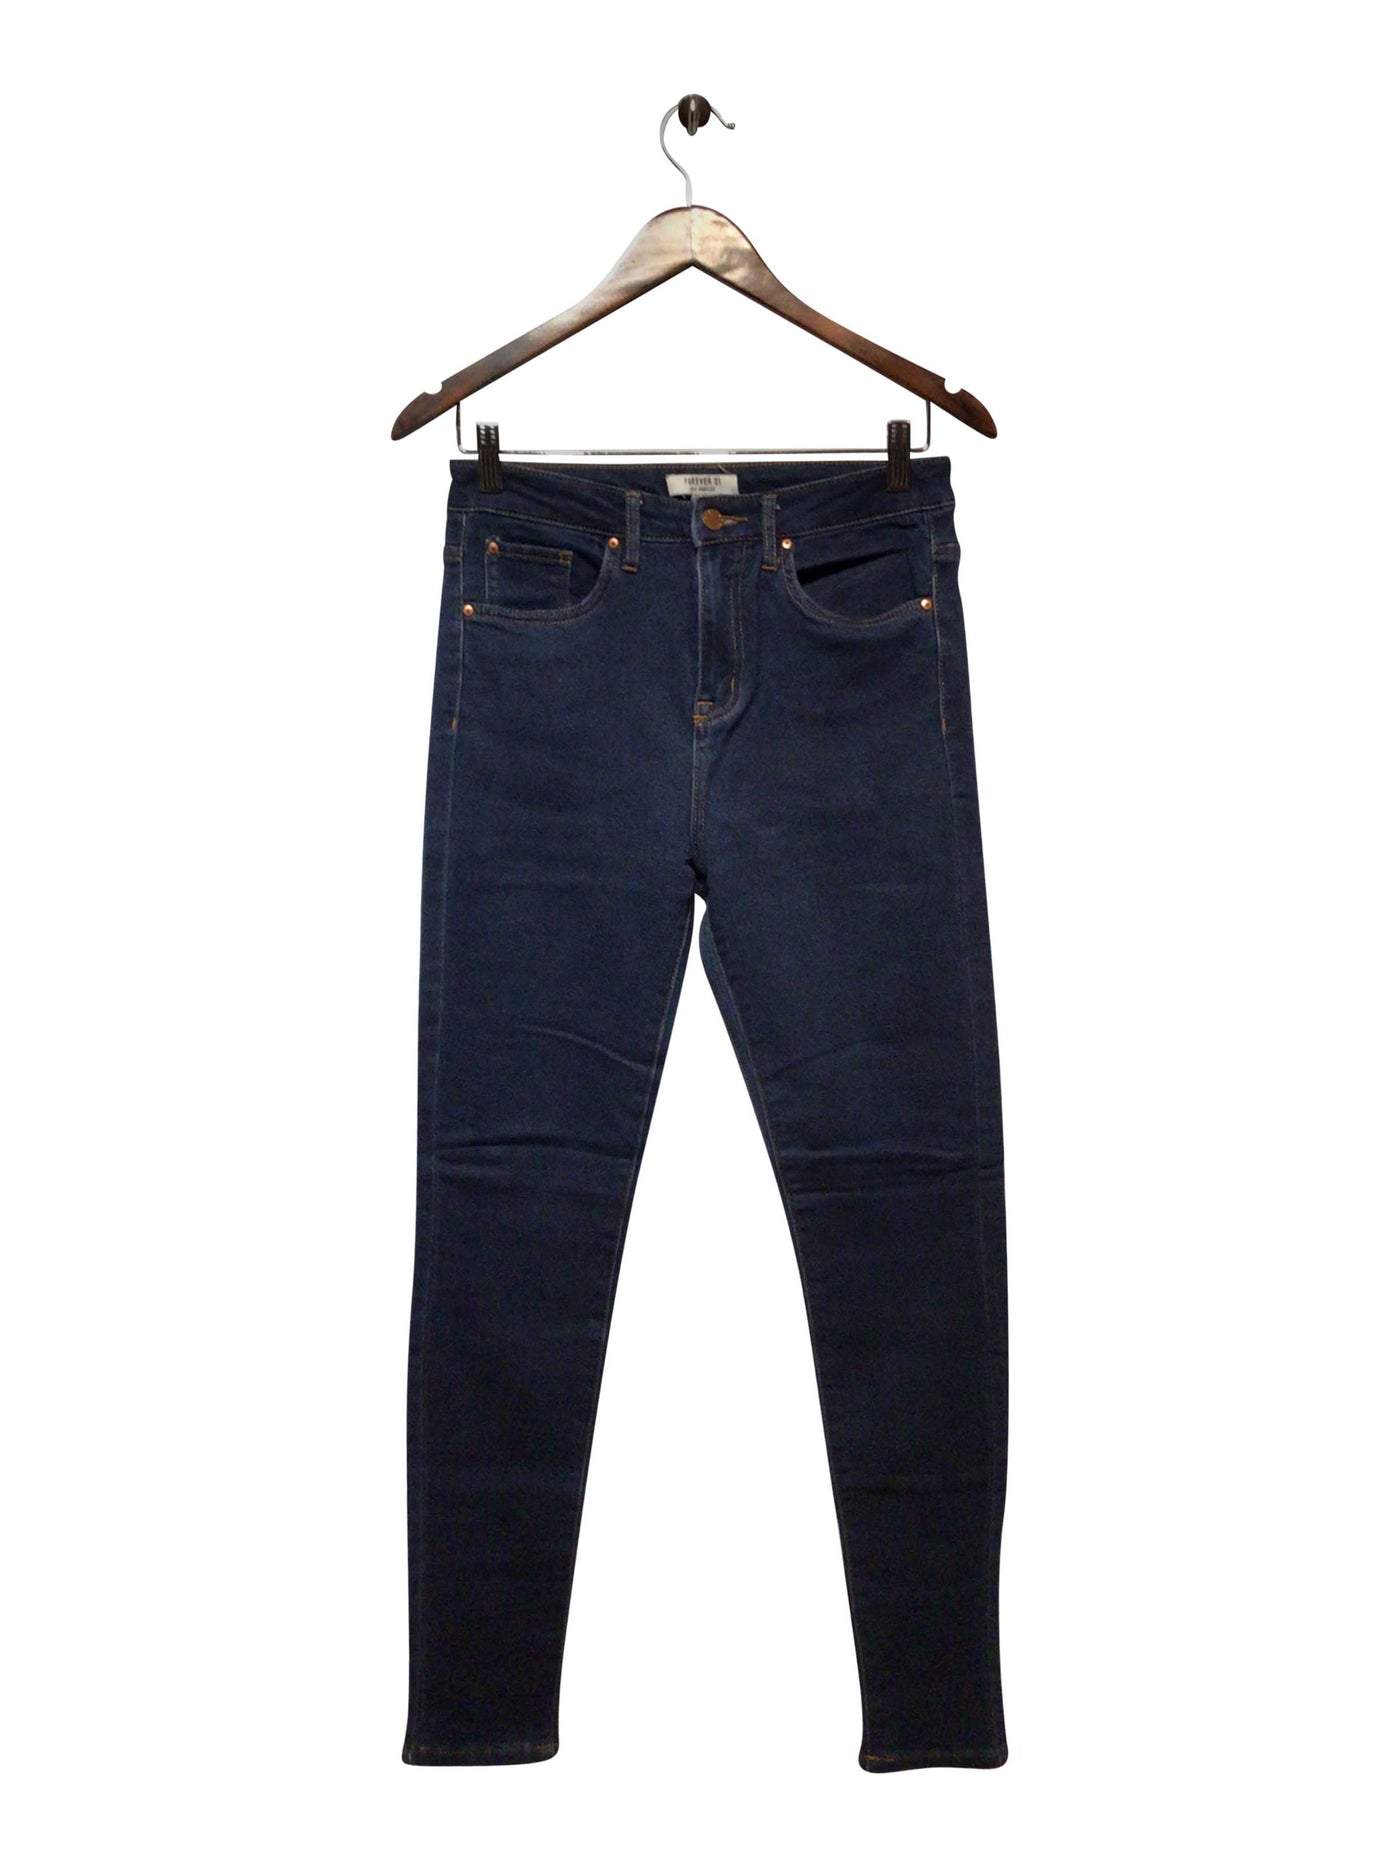 FOREVER 21 Regular fit Straight-legged Jean in Blue  -  27  8.99 Koop